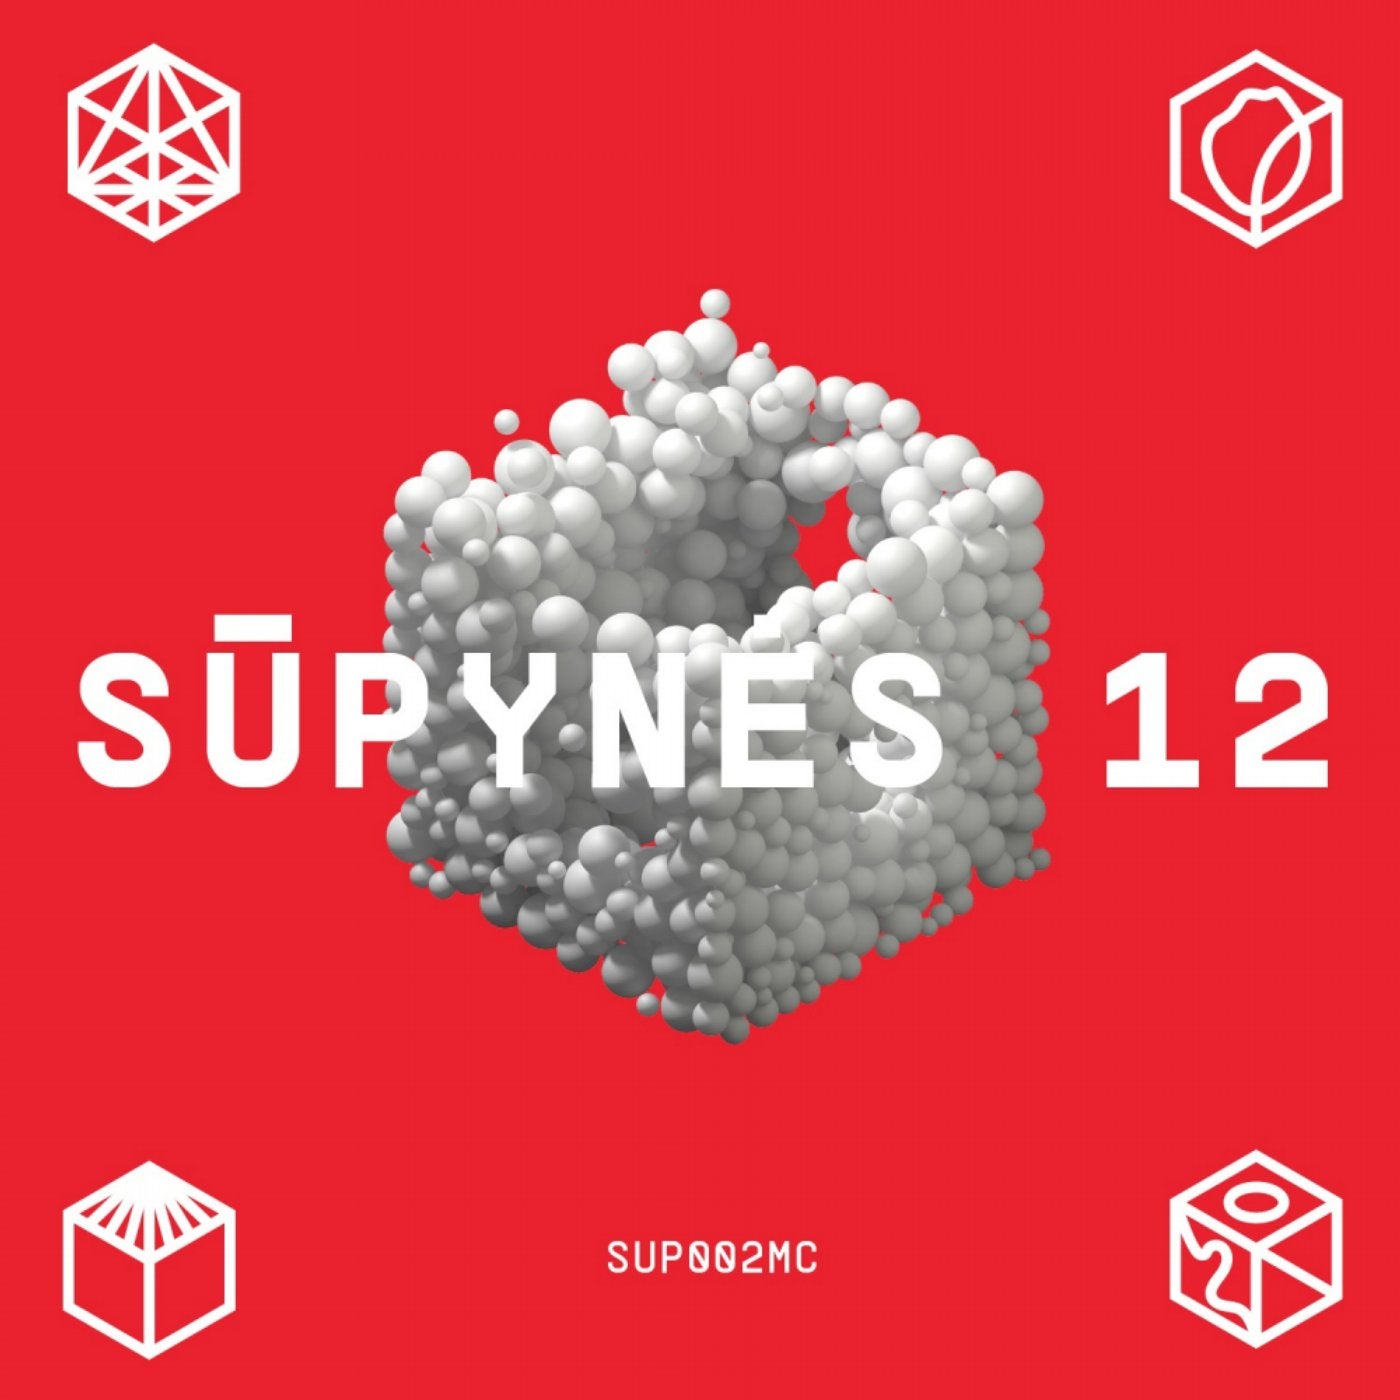 Supynes 12